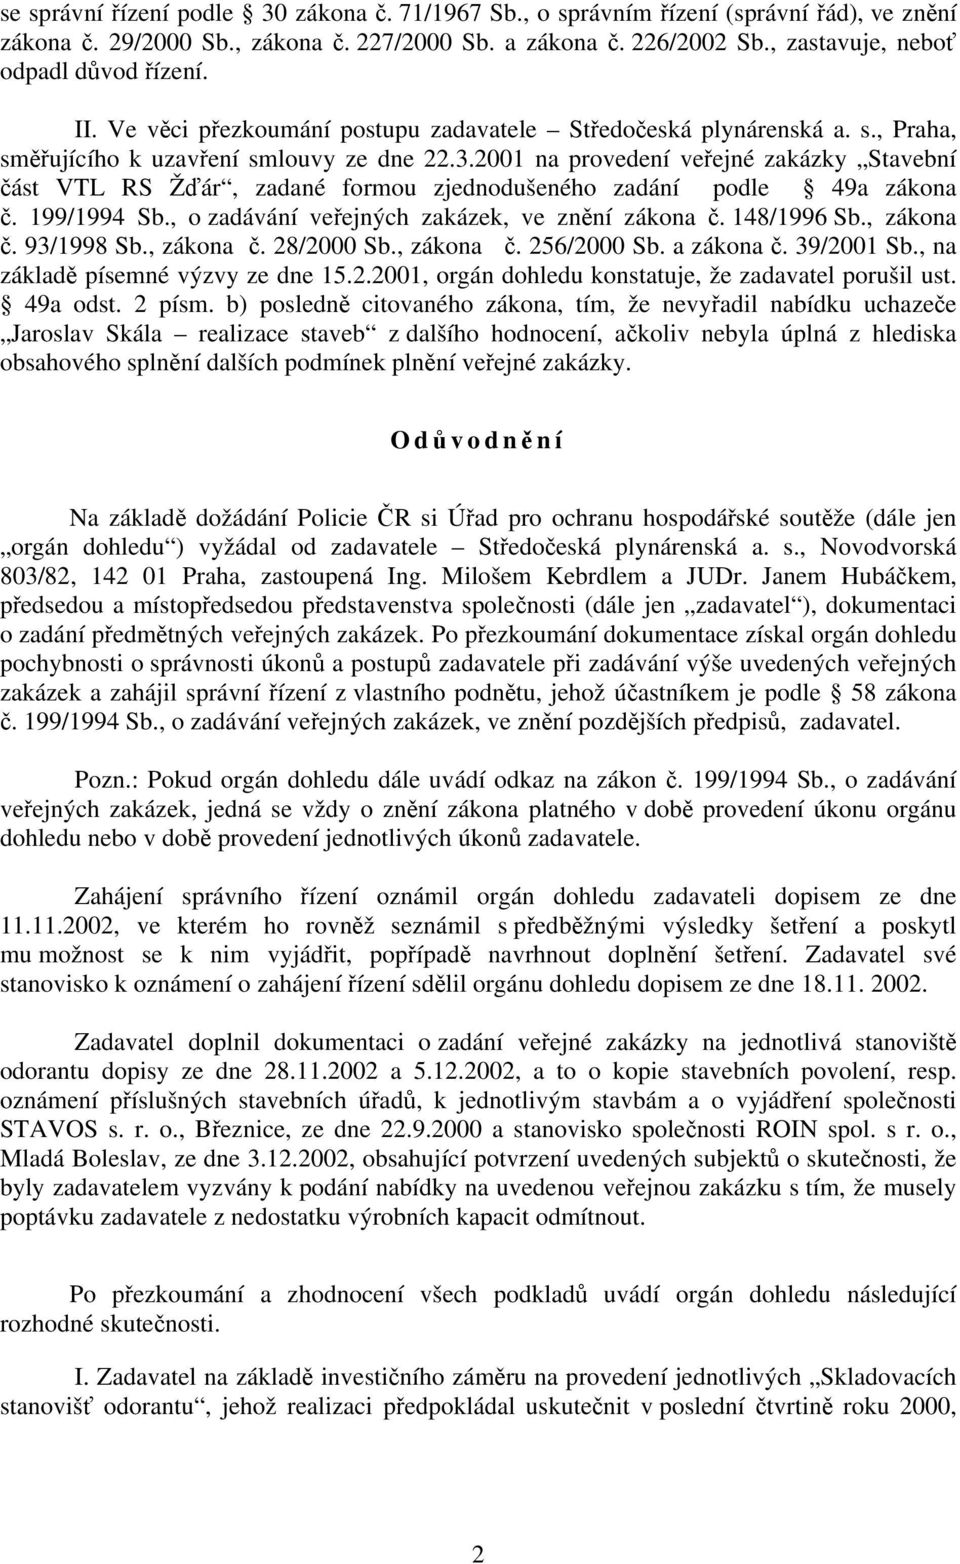 2001 na provedení veřejné zakázky Stavební část VTL RS Žďár, zadané formou zjednodušeného zadání podle 49a zákona č. 199/1994 Sb., o zadávání veřejných zakázek, ve znění zákona č. 148/1996 Sb.